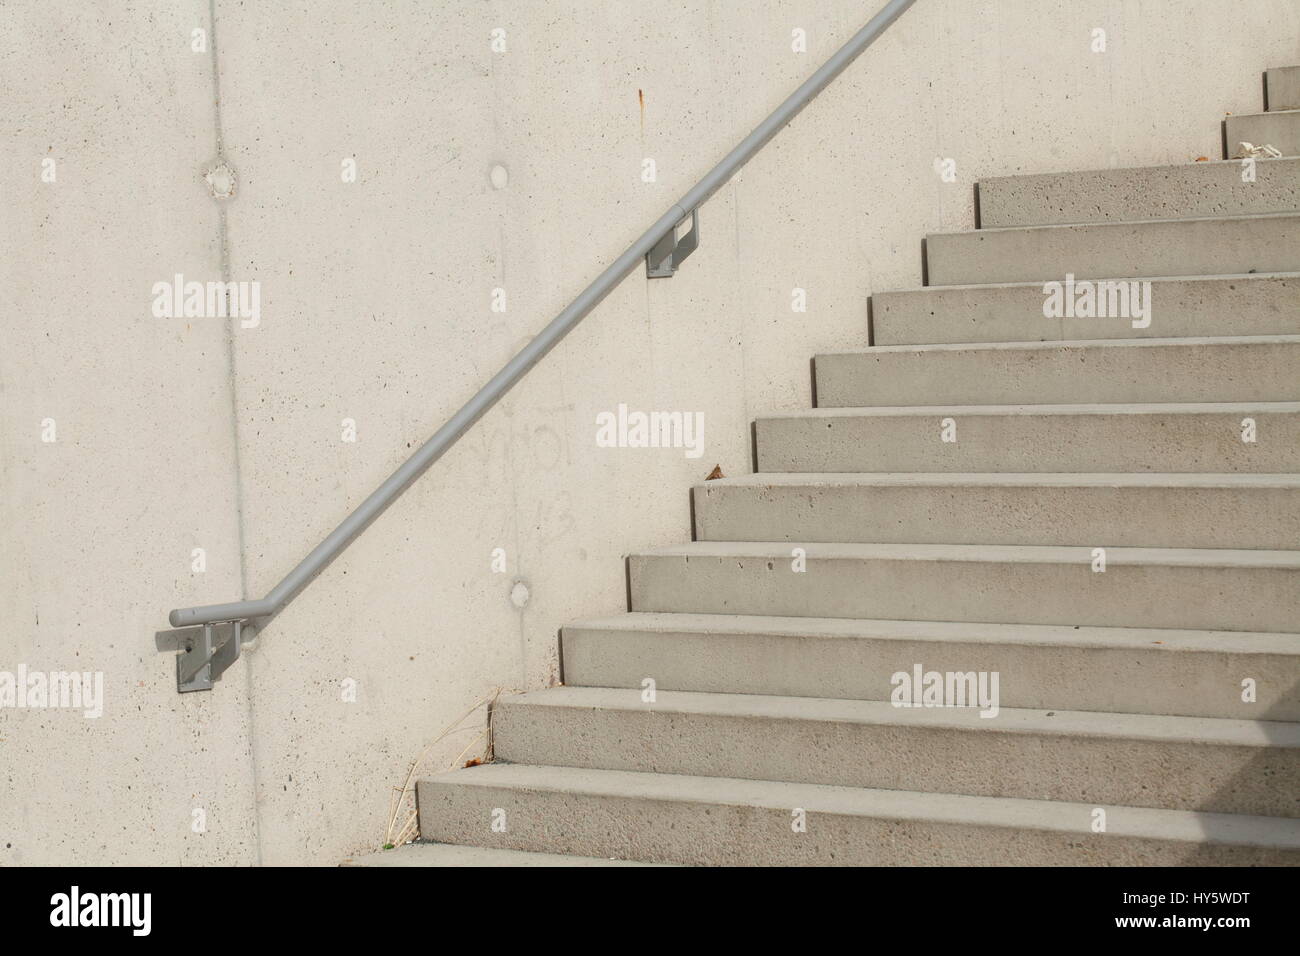 concrete stones stairway Stock Photo